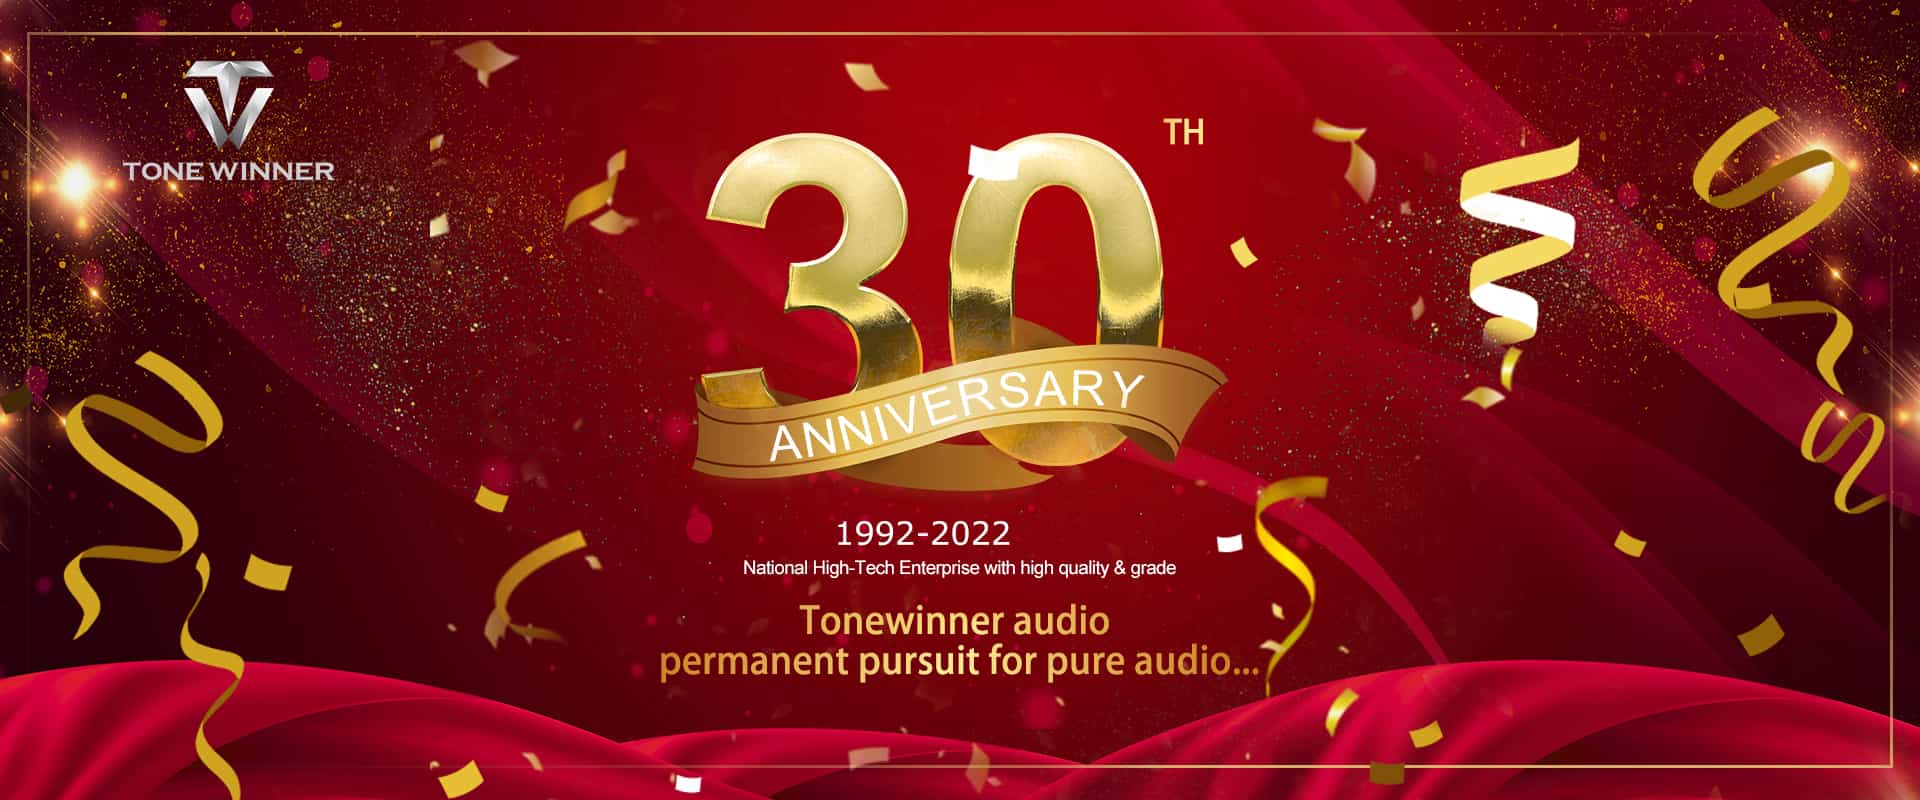 Celebración del 30 aniversario de Tonewinner, ¡felicidades!
